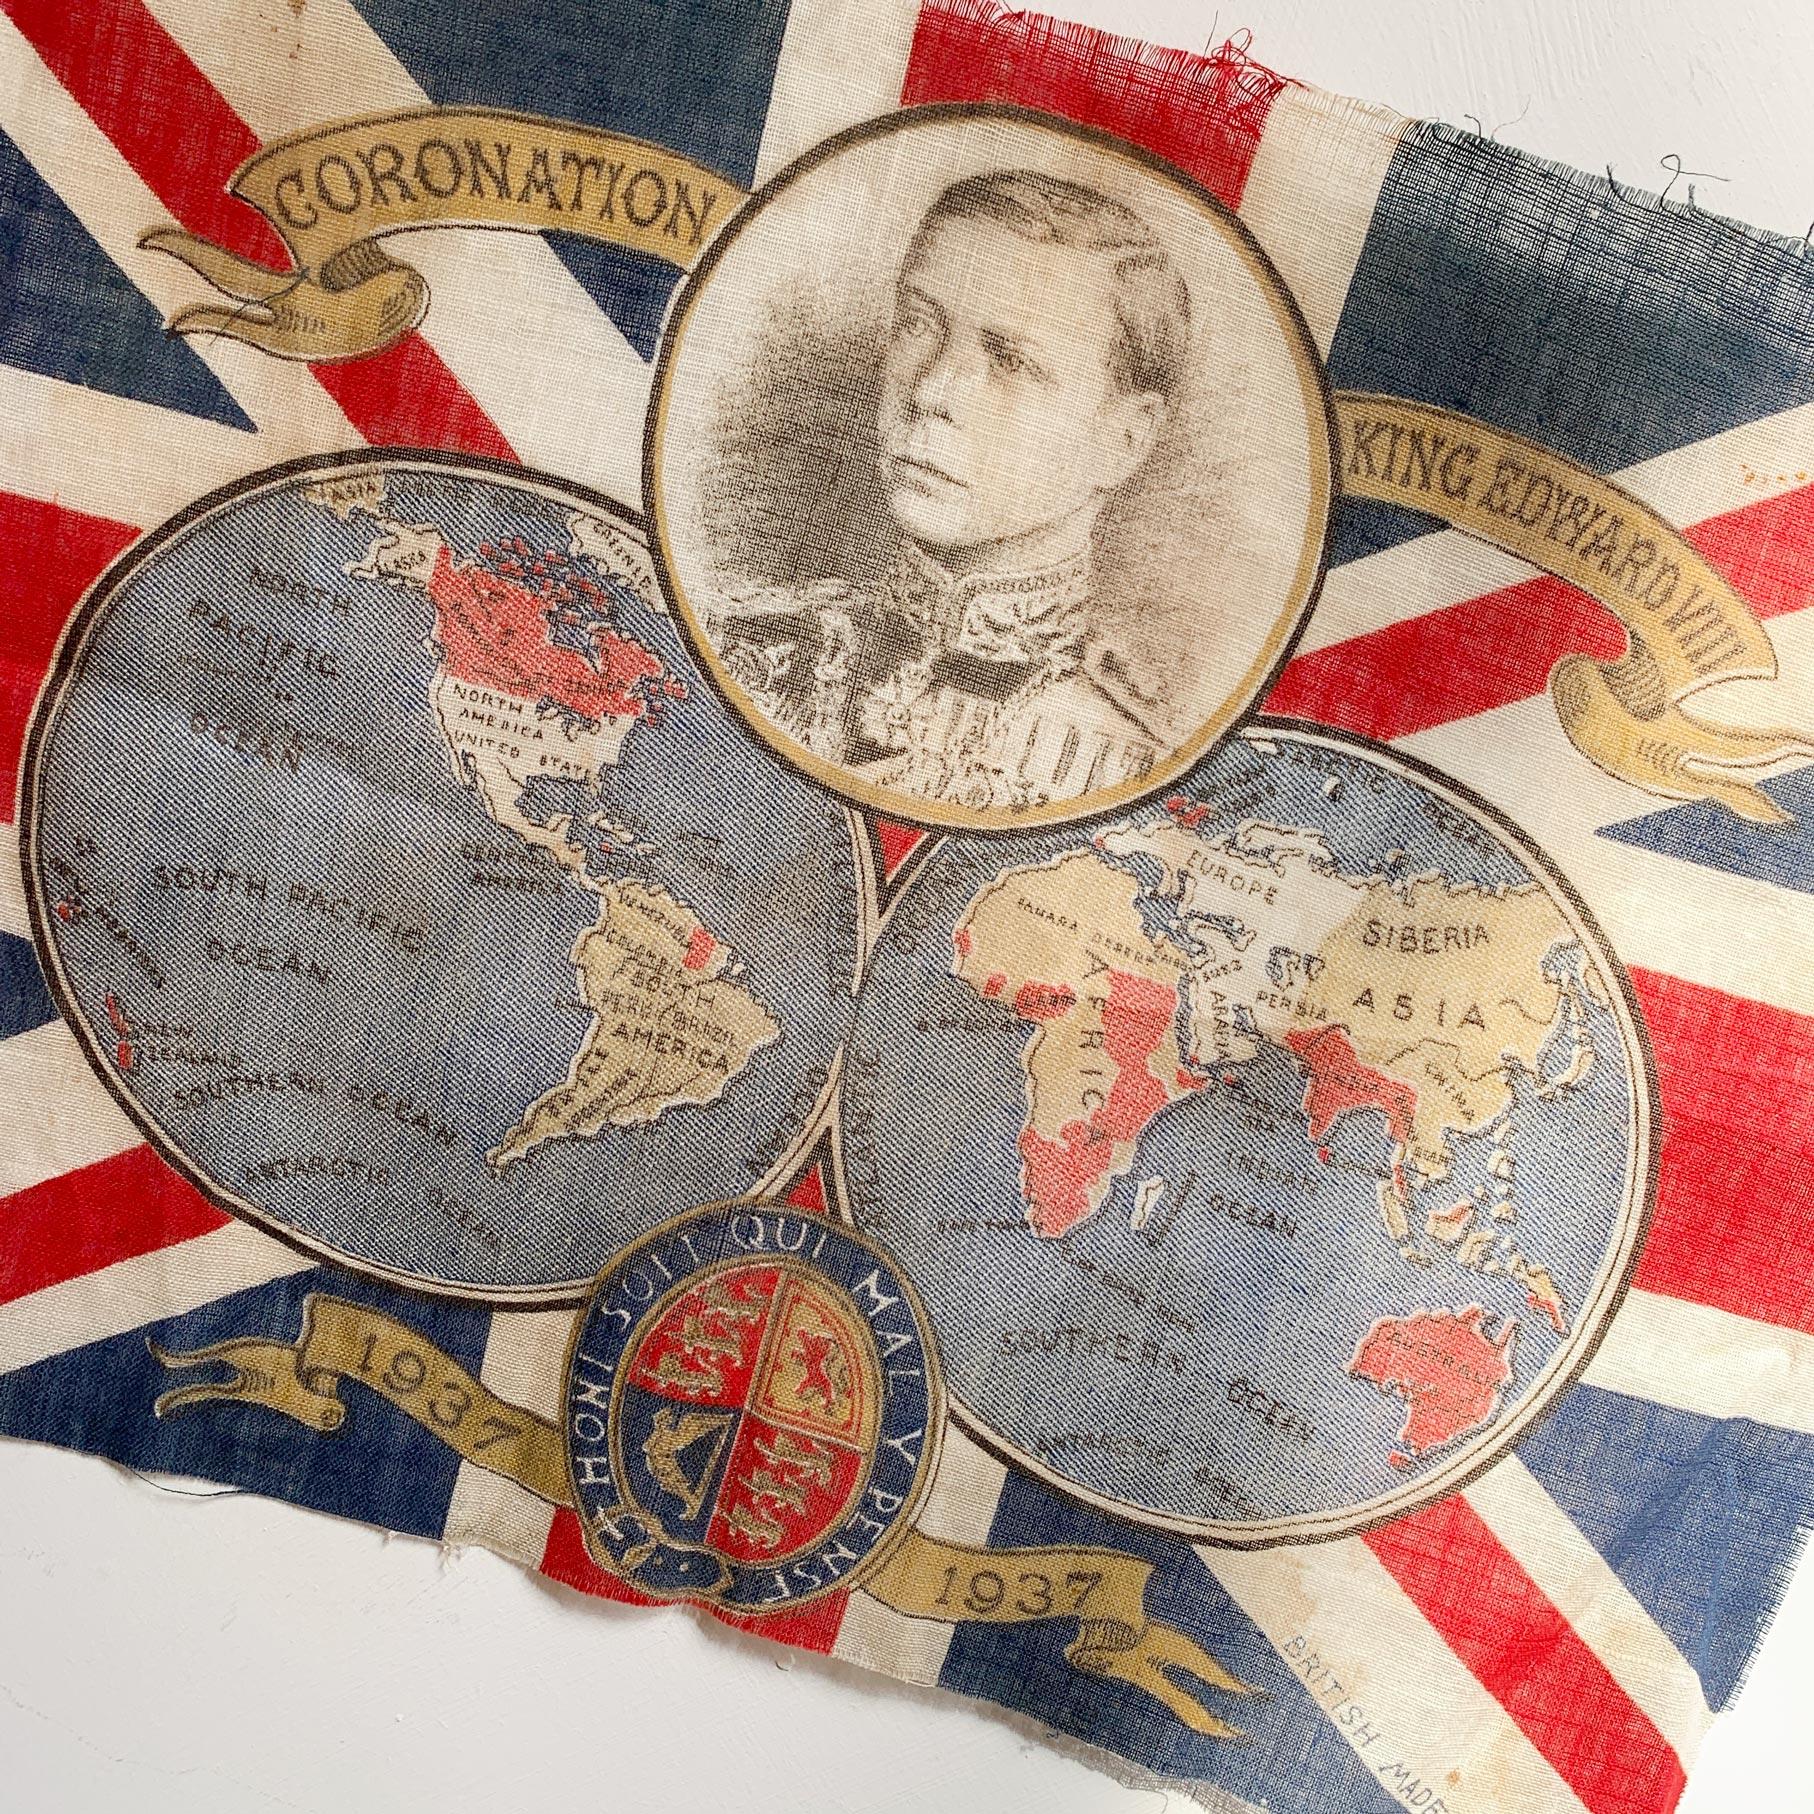 La famille royale britannique

Ce drapeau a été produit pour commémorer le couronnement du roi Édouard VIII qui devait avoir lieu en 1937 mais qui n'a jamais eu lieu en raison de son abdication, ce qui en fait un drapeau de couronnement très